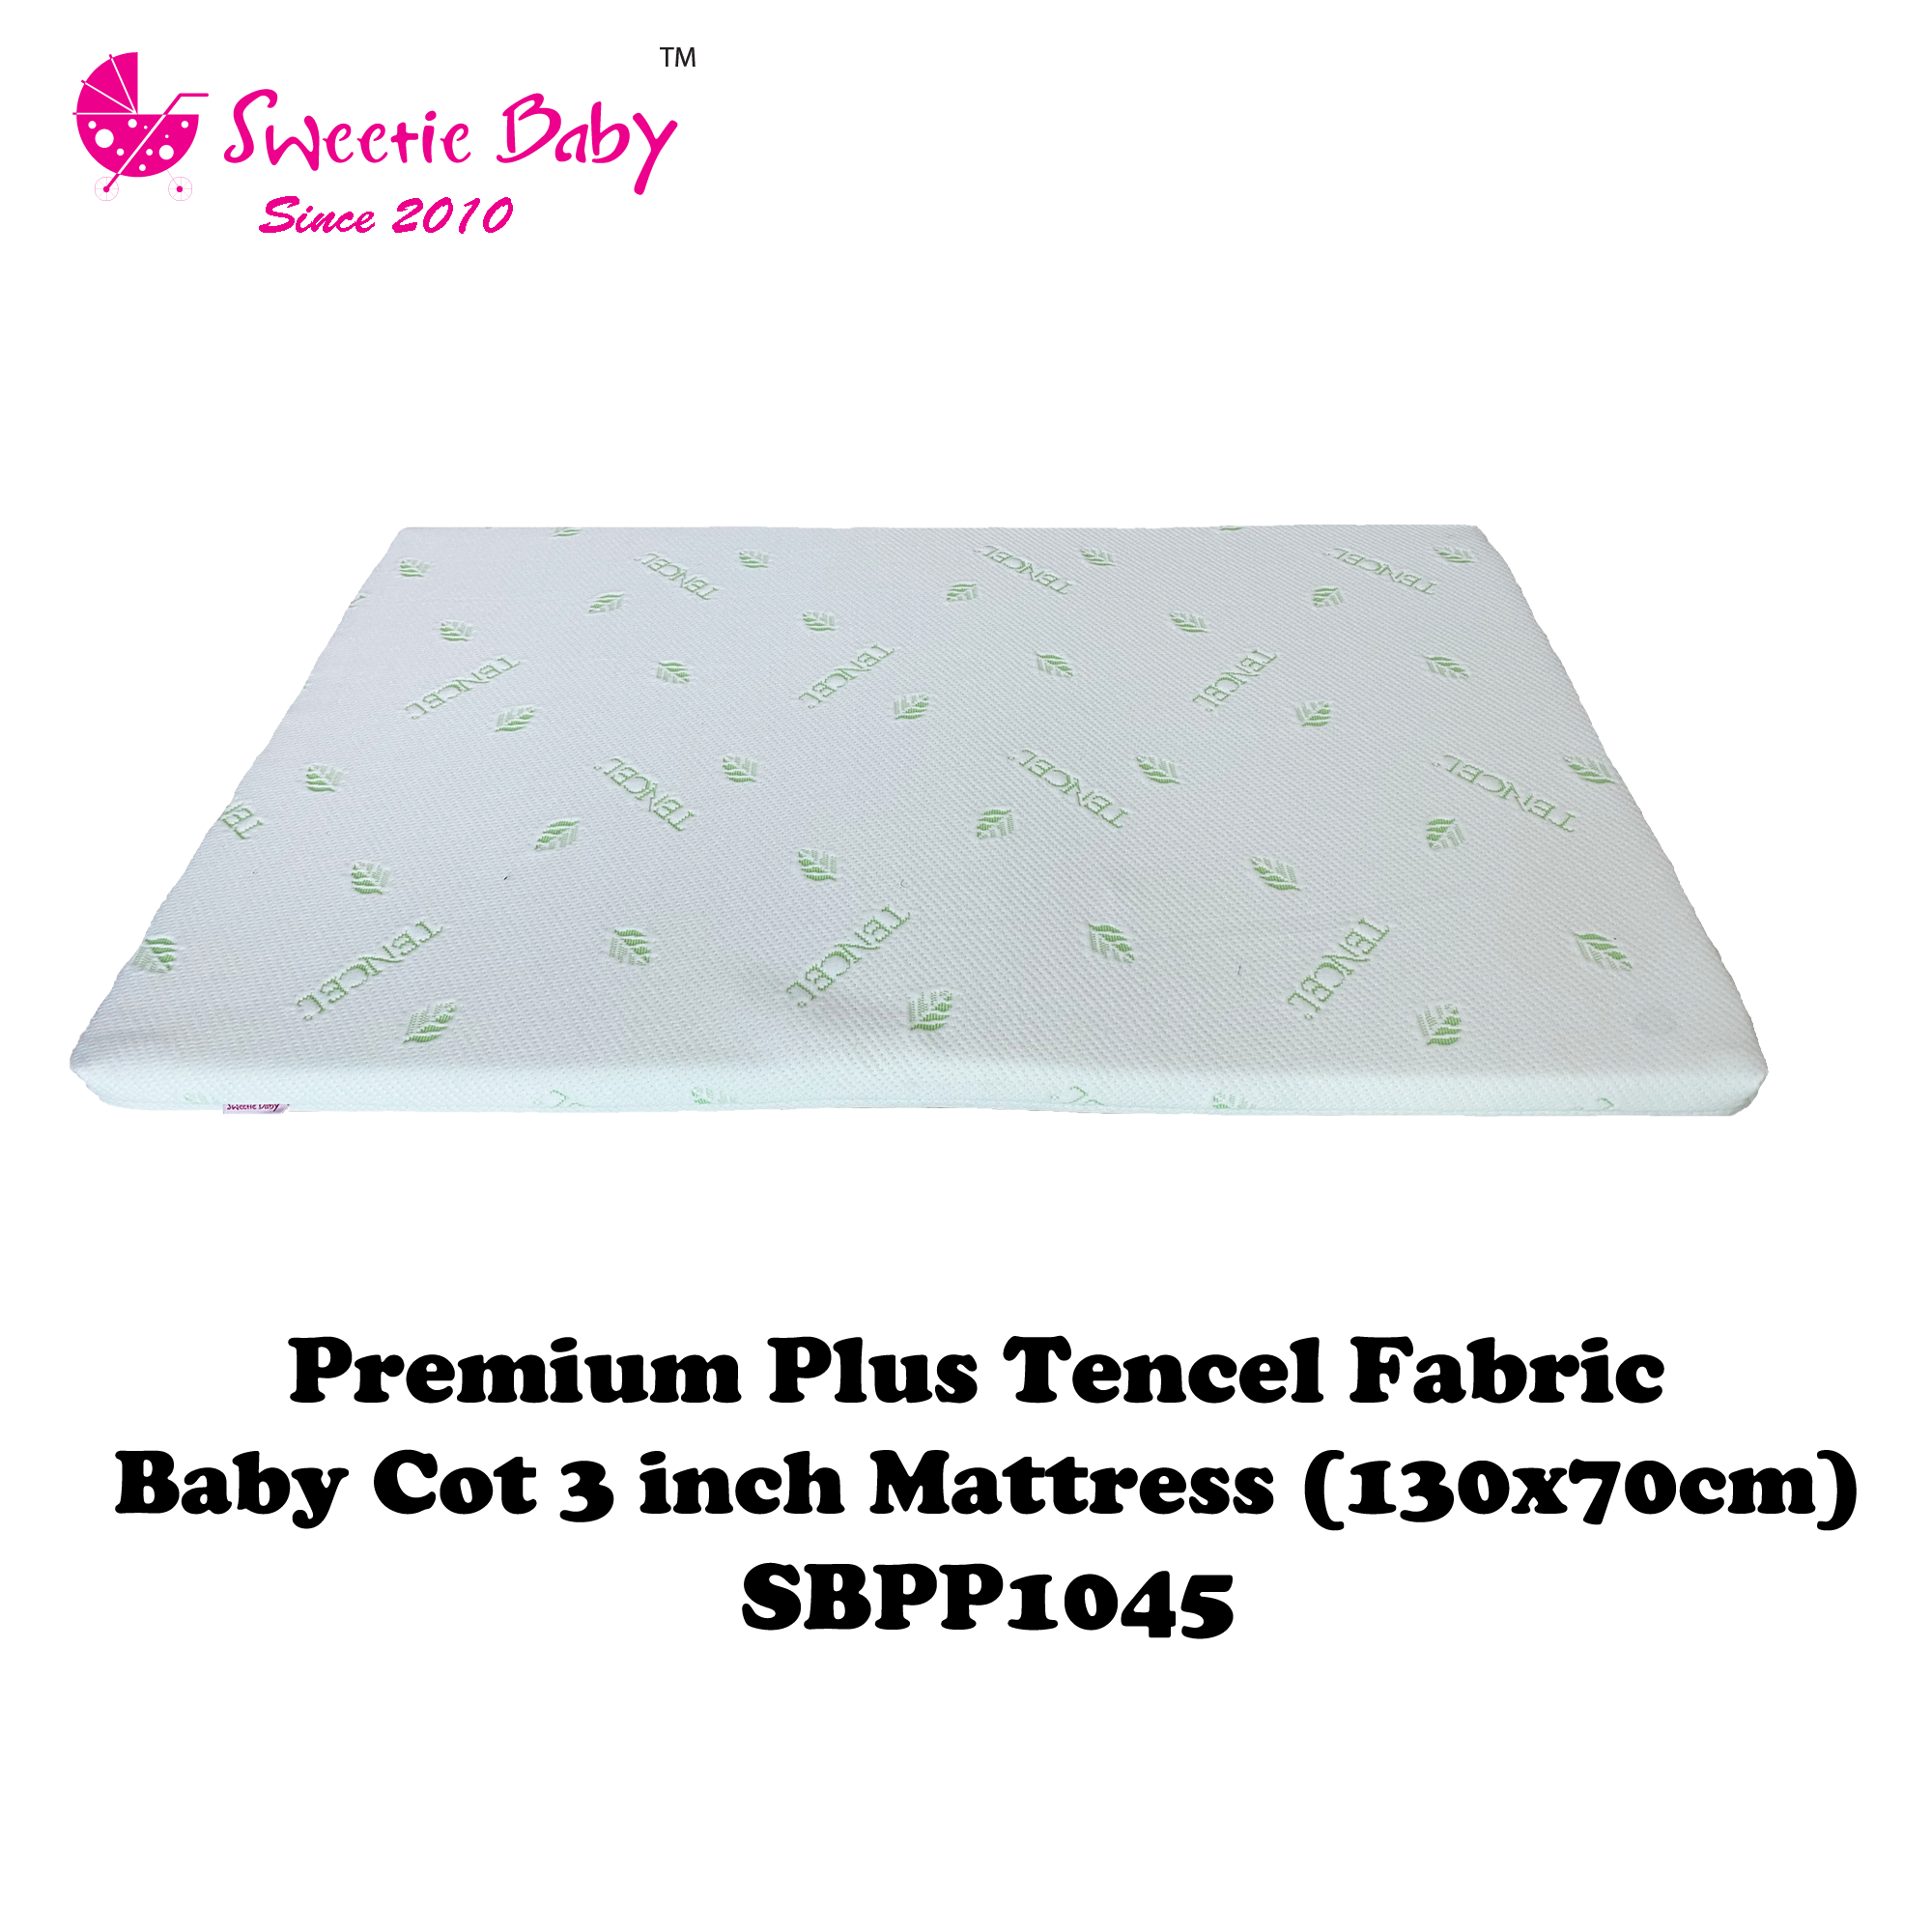 Sweetie Baby Premium Plus Tencel Baby Cot Mattress 130x70 (SBPP1045)